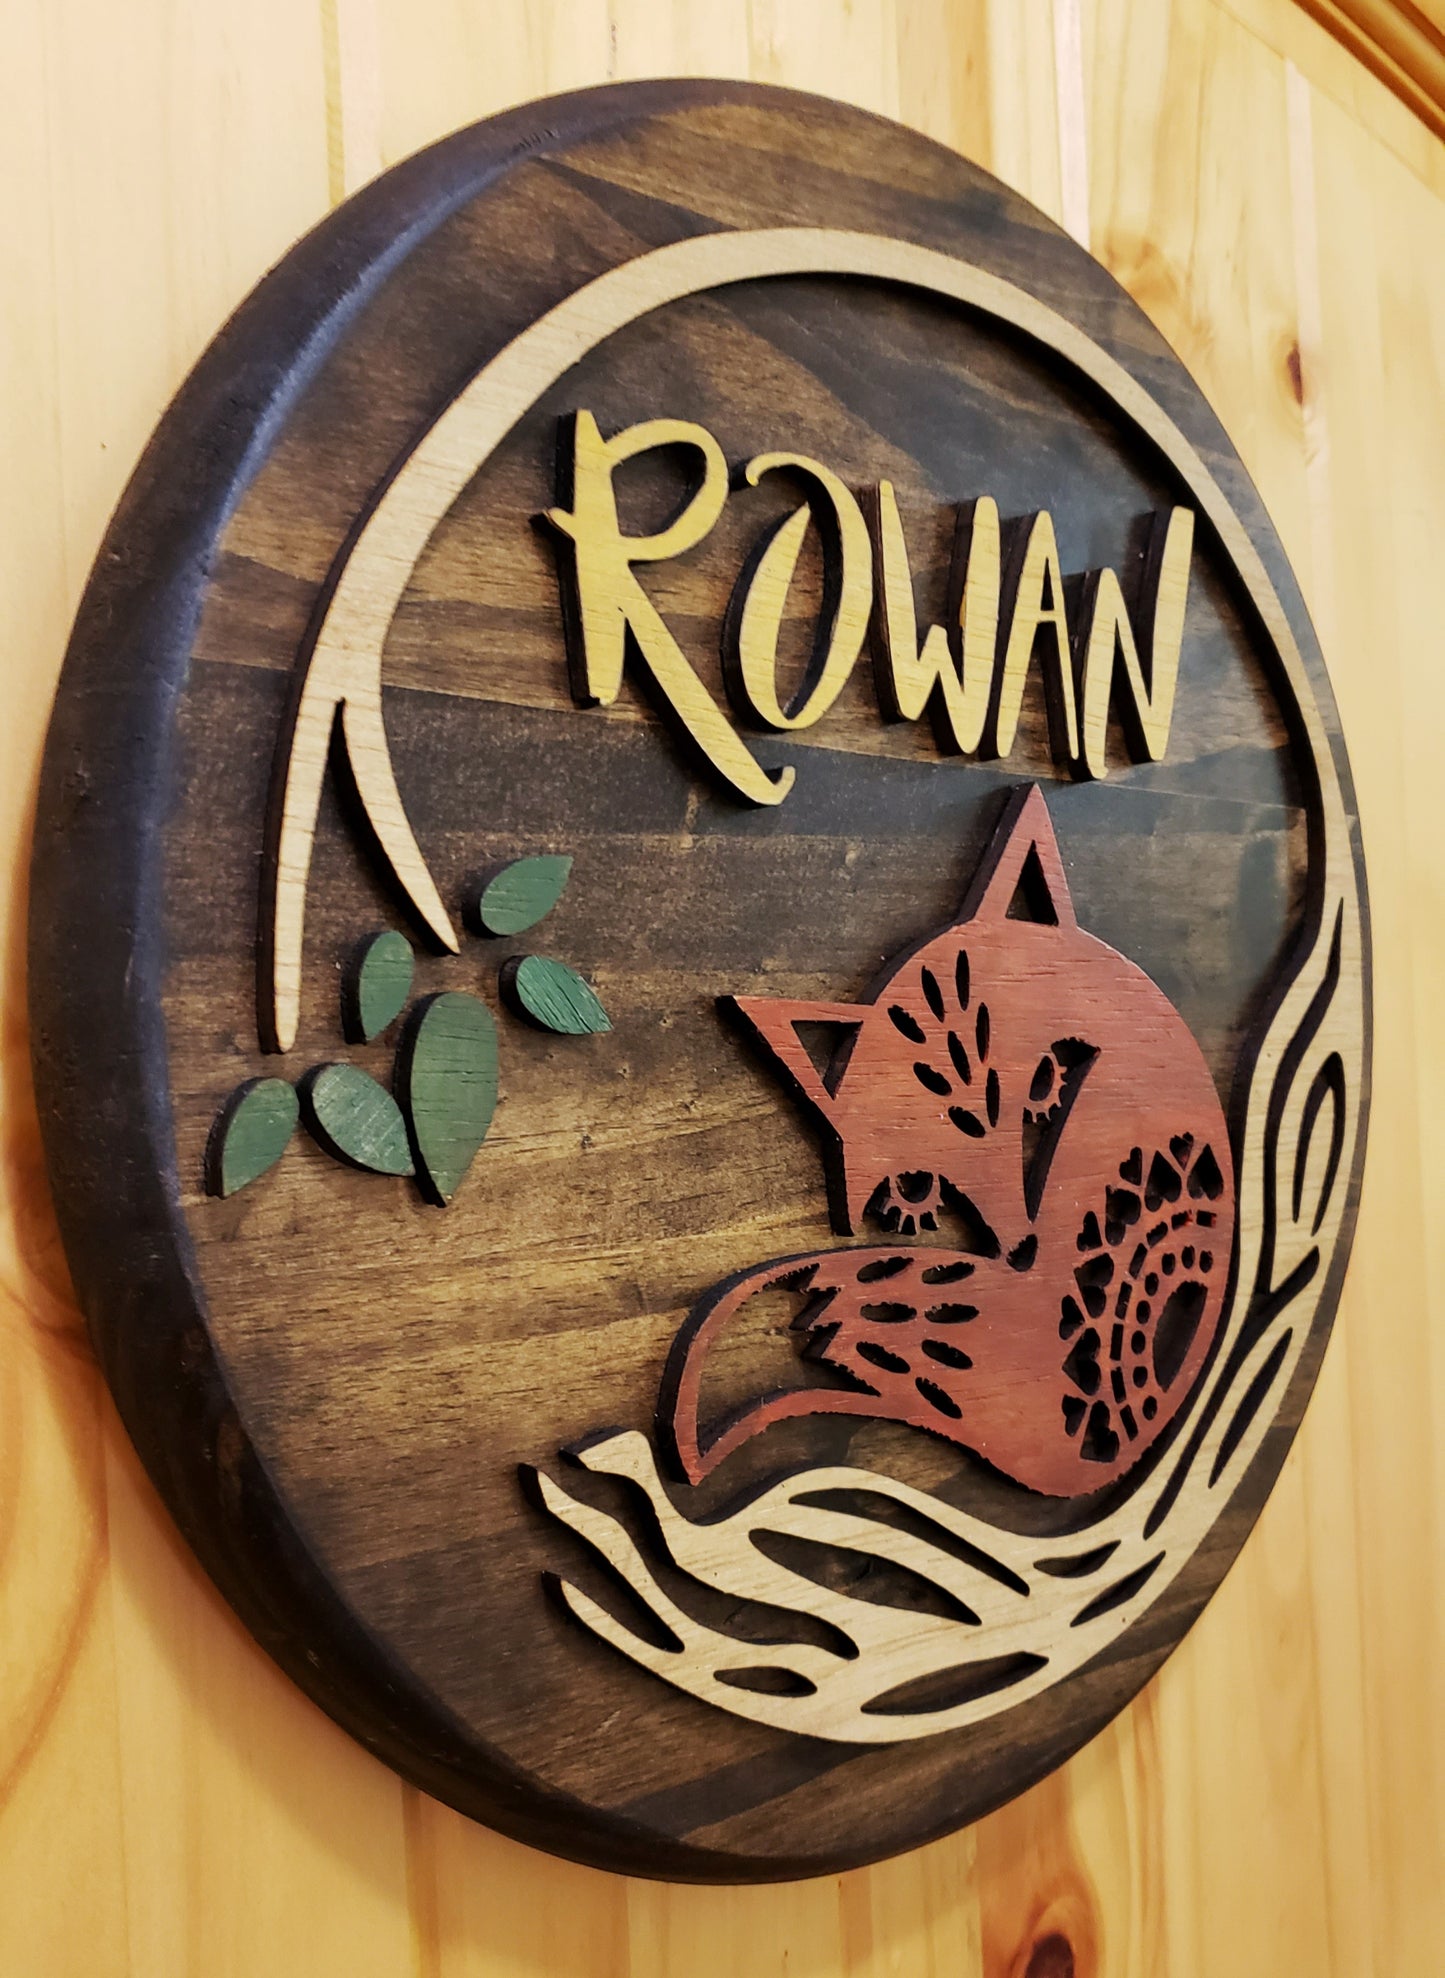 The "Rowan" Nursery Round